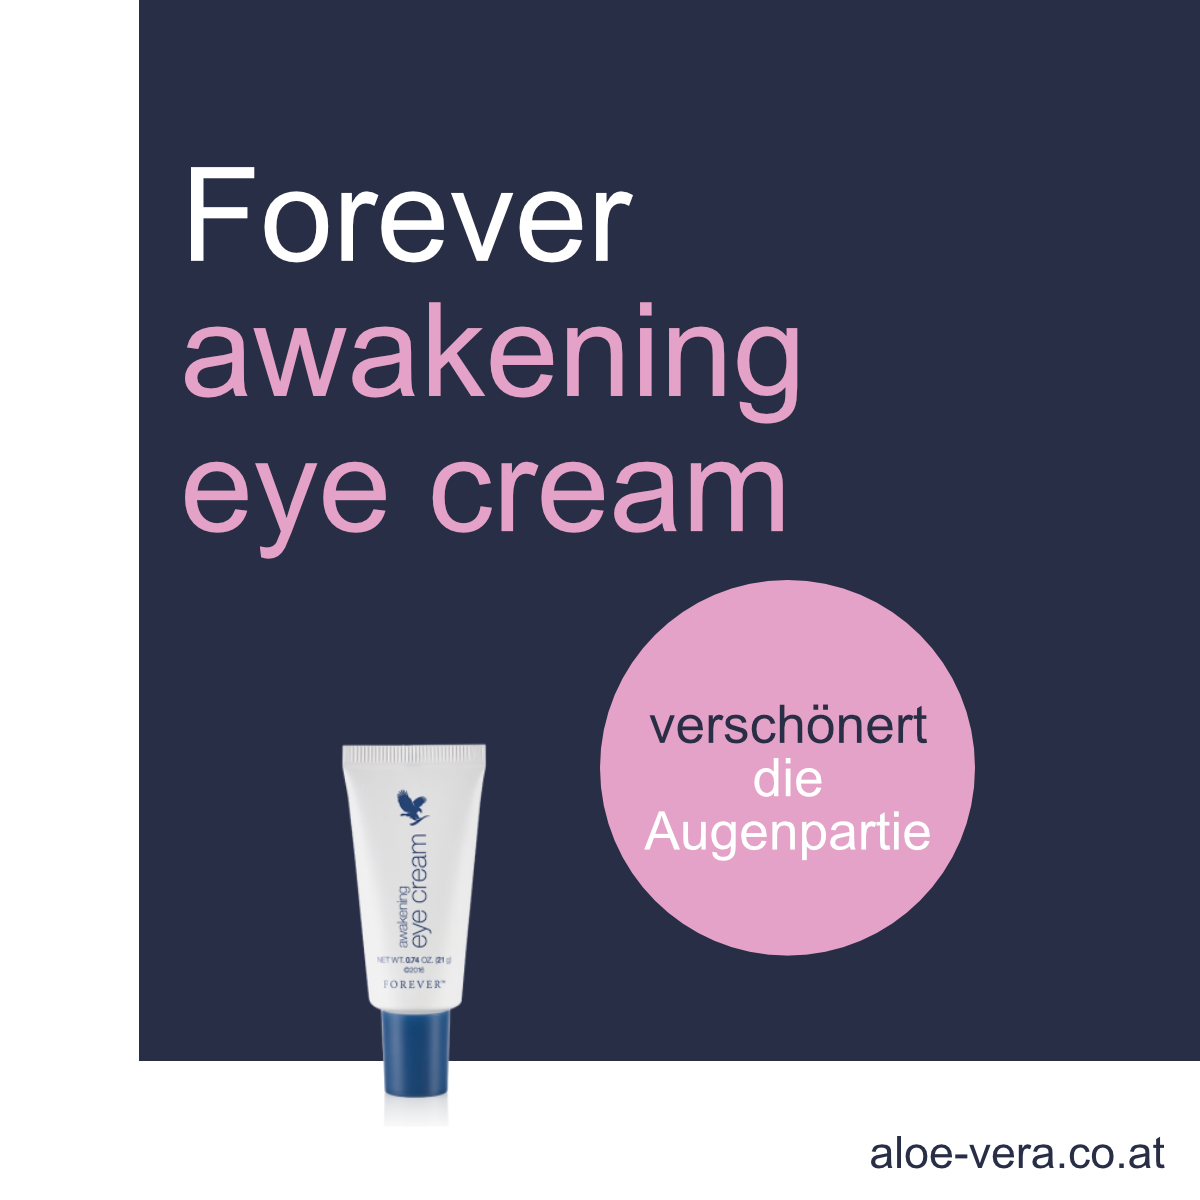 Forever awakening eyecream Augencreme Aloe Vera Faltencreme kaufen